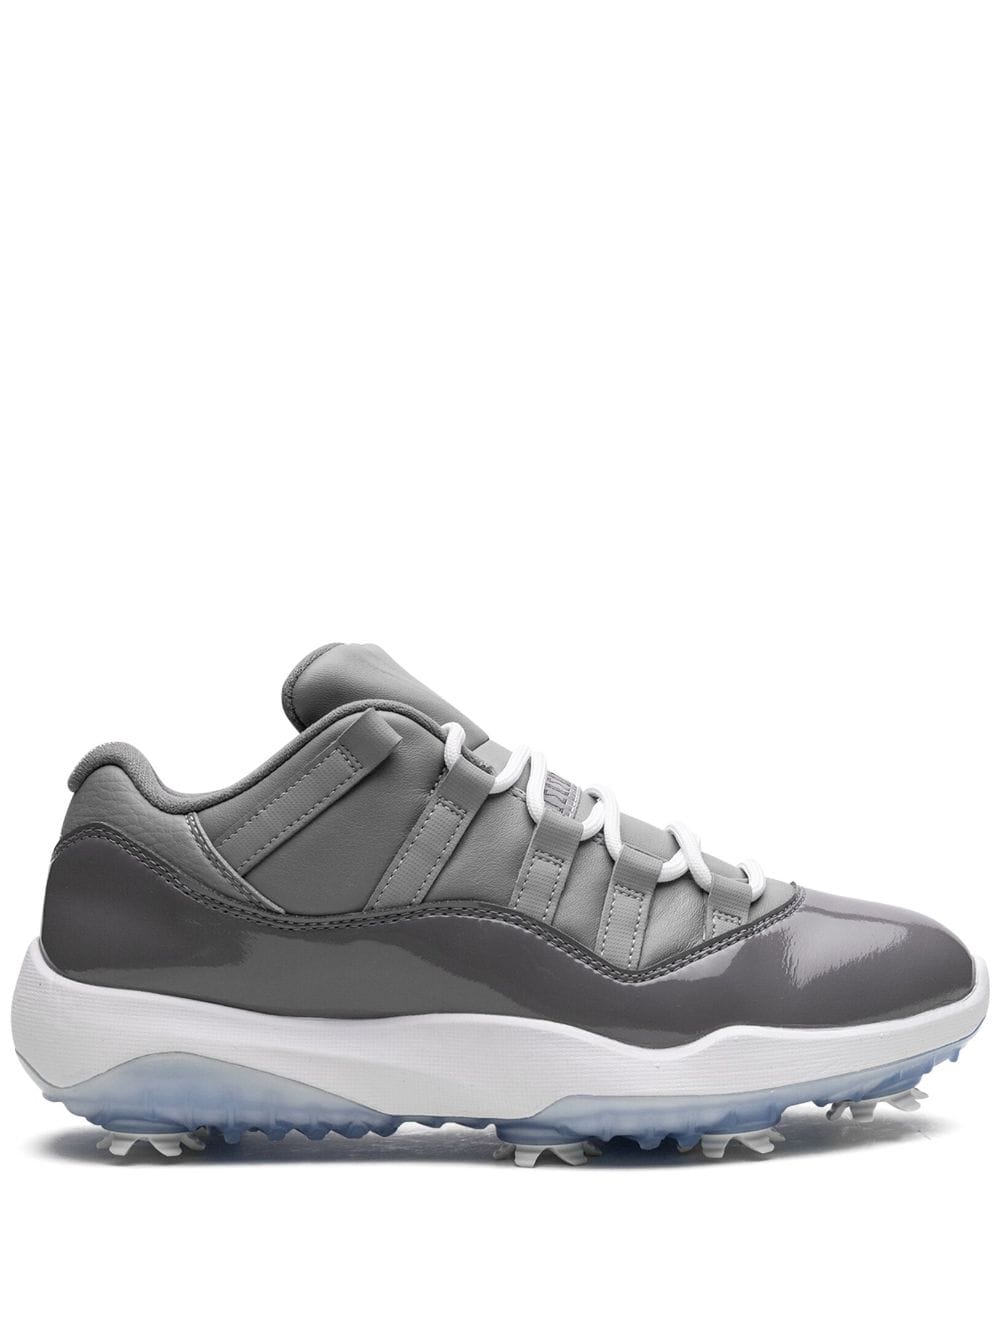 Jordan 11 Low Golf "Cool Grey" sneakers von Jordan